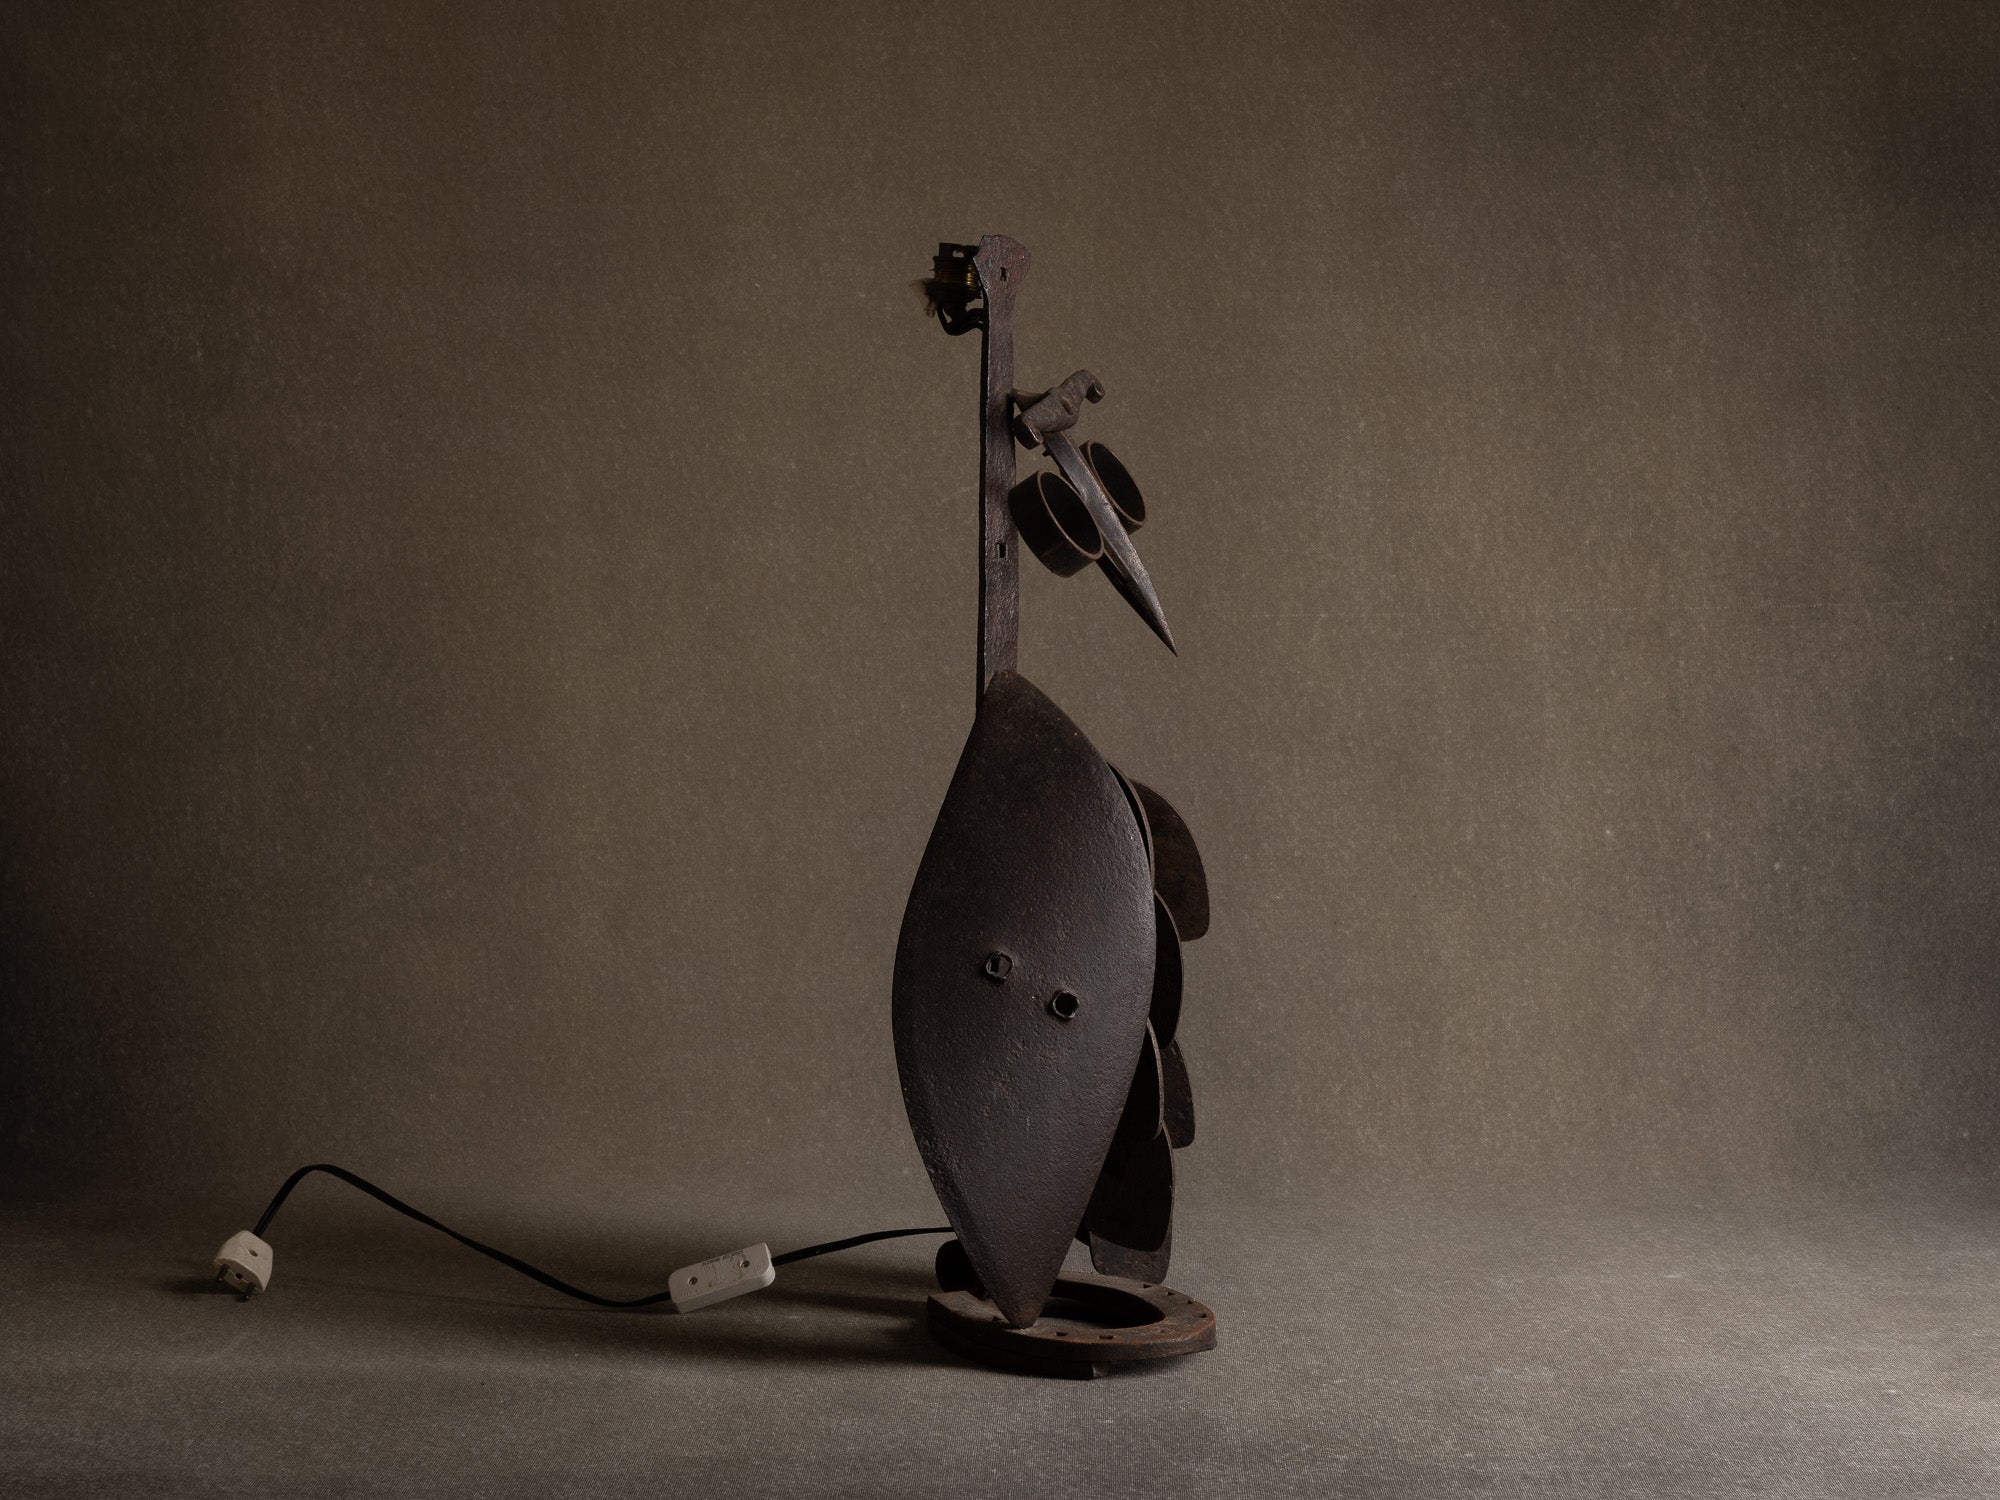 Lampe sculpturale zoomorphe "oiseau" en fer battu, travail populaire, France (années 1950)..Zoomorphic sculptural ironwork lamp "bird", popular work, France (1950s)